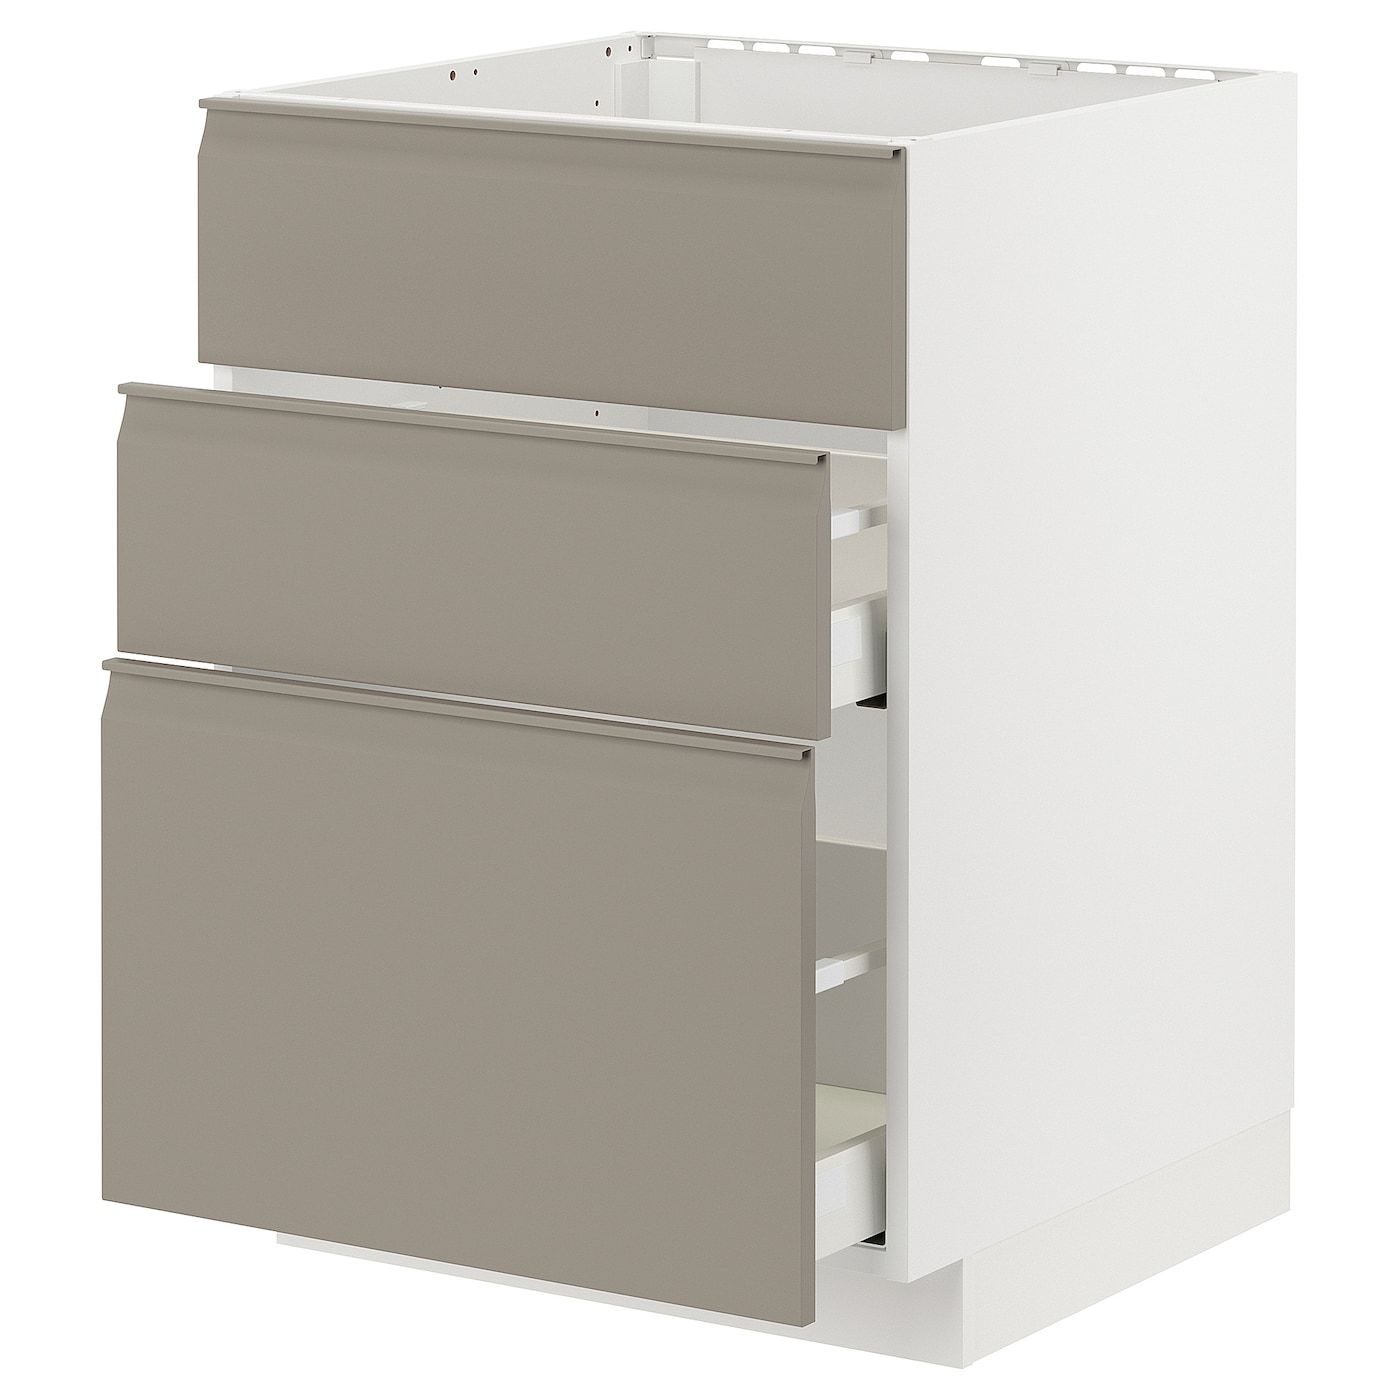 Напольный шкаф - IKEA METOD MAXIMERA, 80x62x60см, белый/темно-бежевый, МЕТОД МАКСИМЕРА ИКЕА